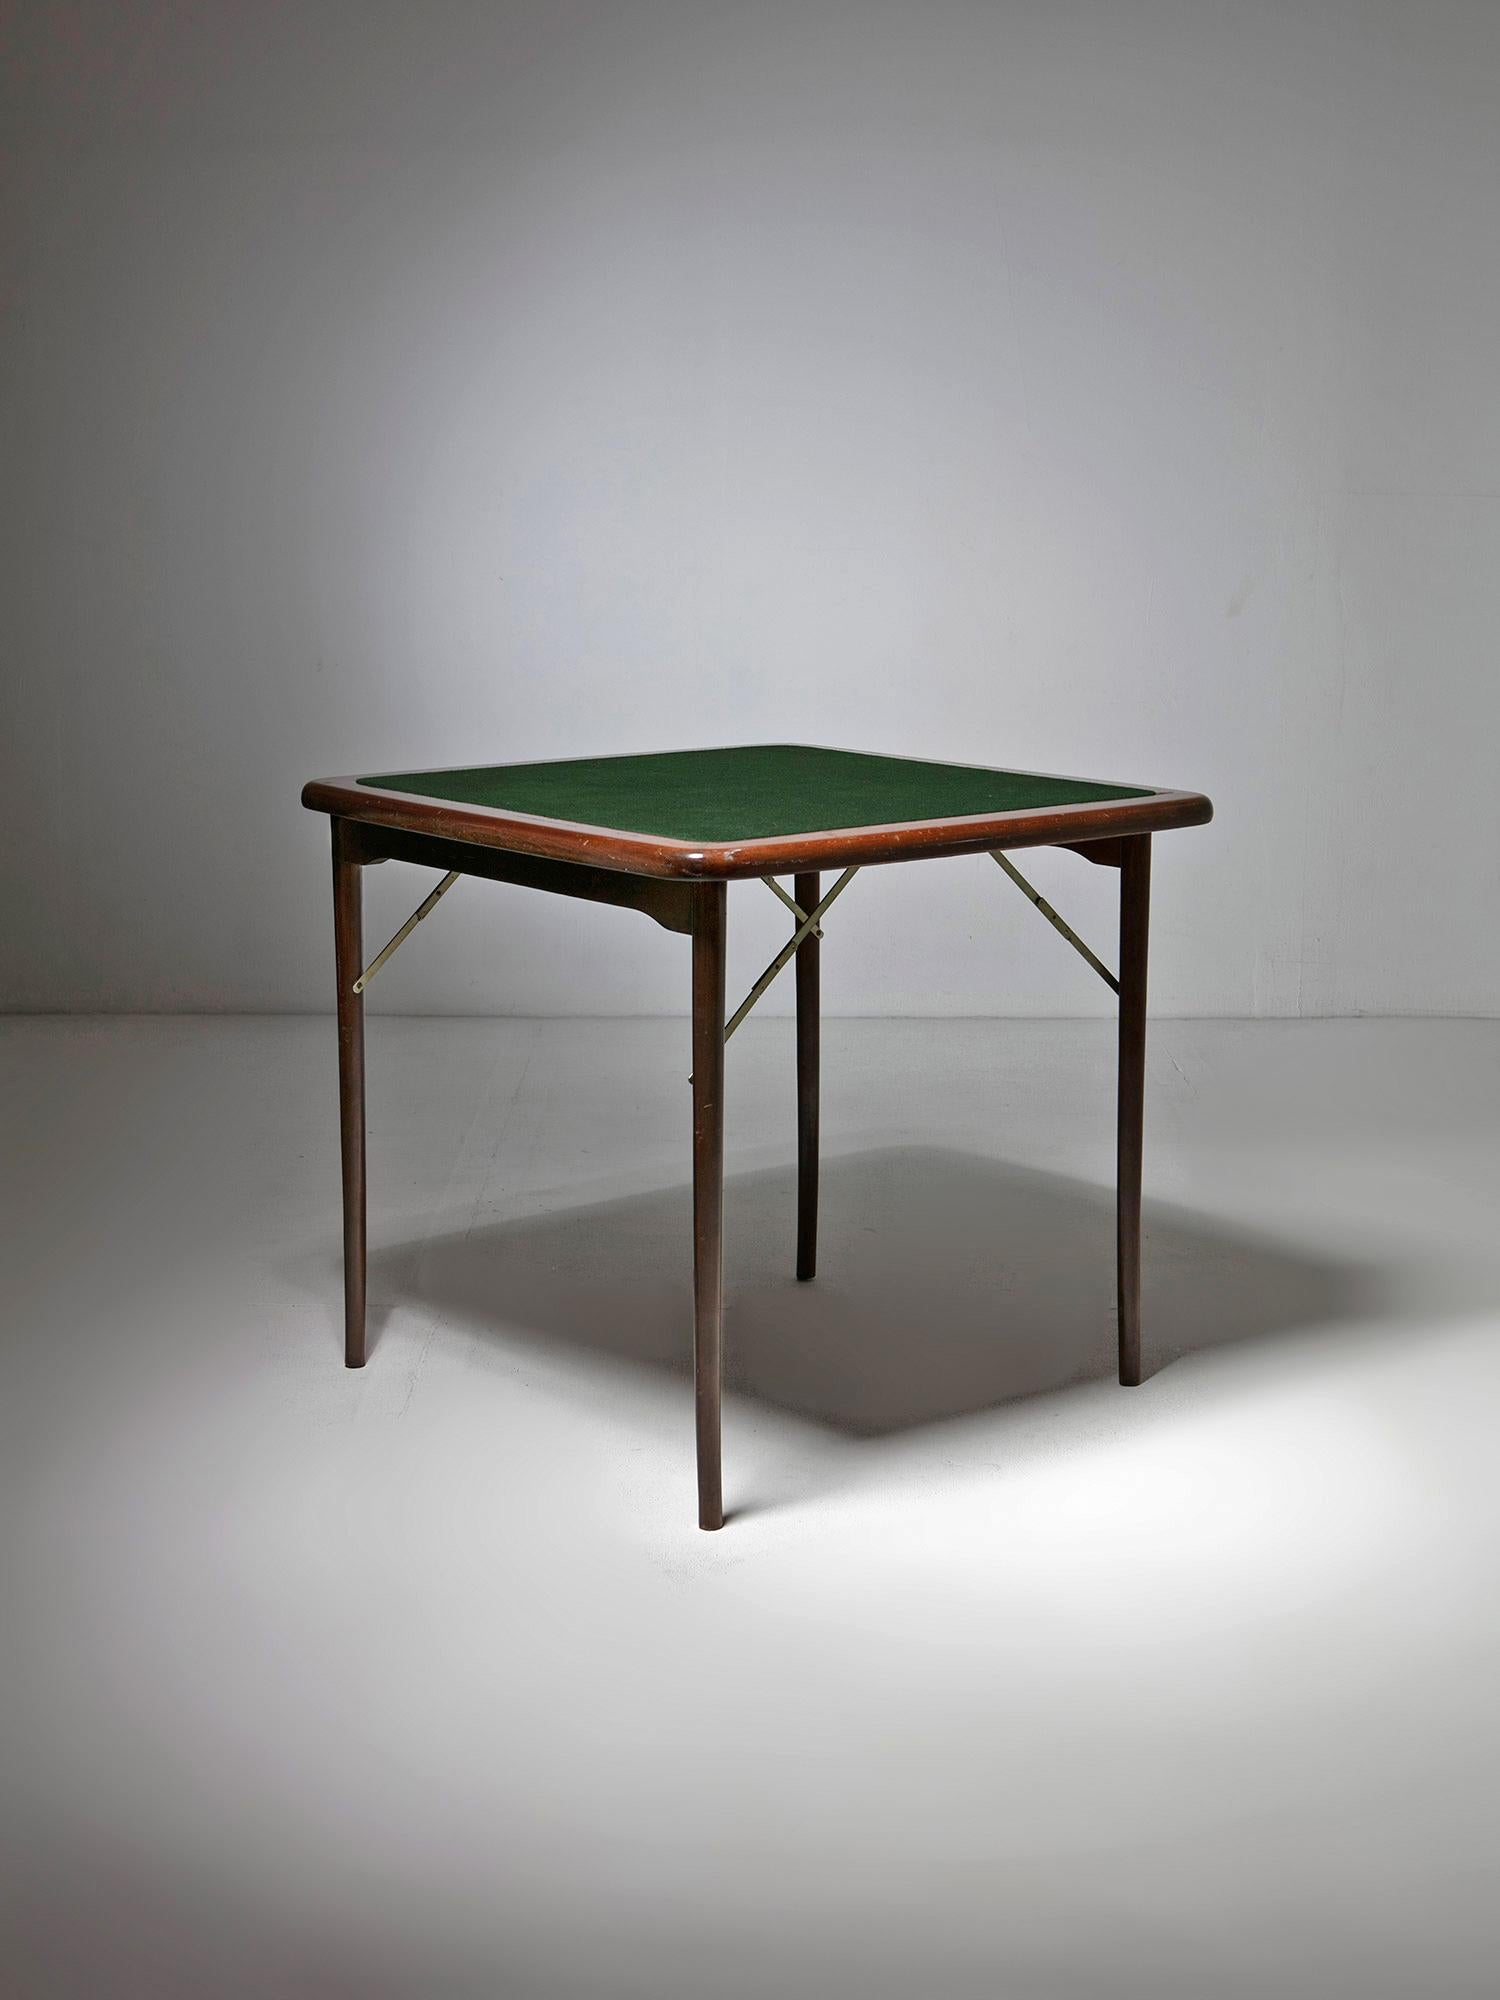 Table Foldes à bords arrondis et plateau recouvert de tissu vert.
Détails en laiton